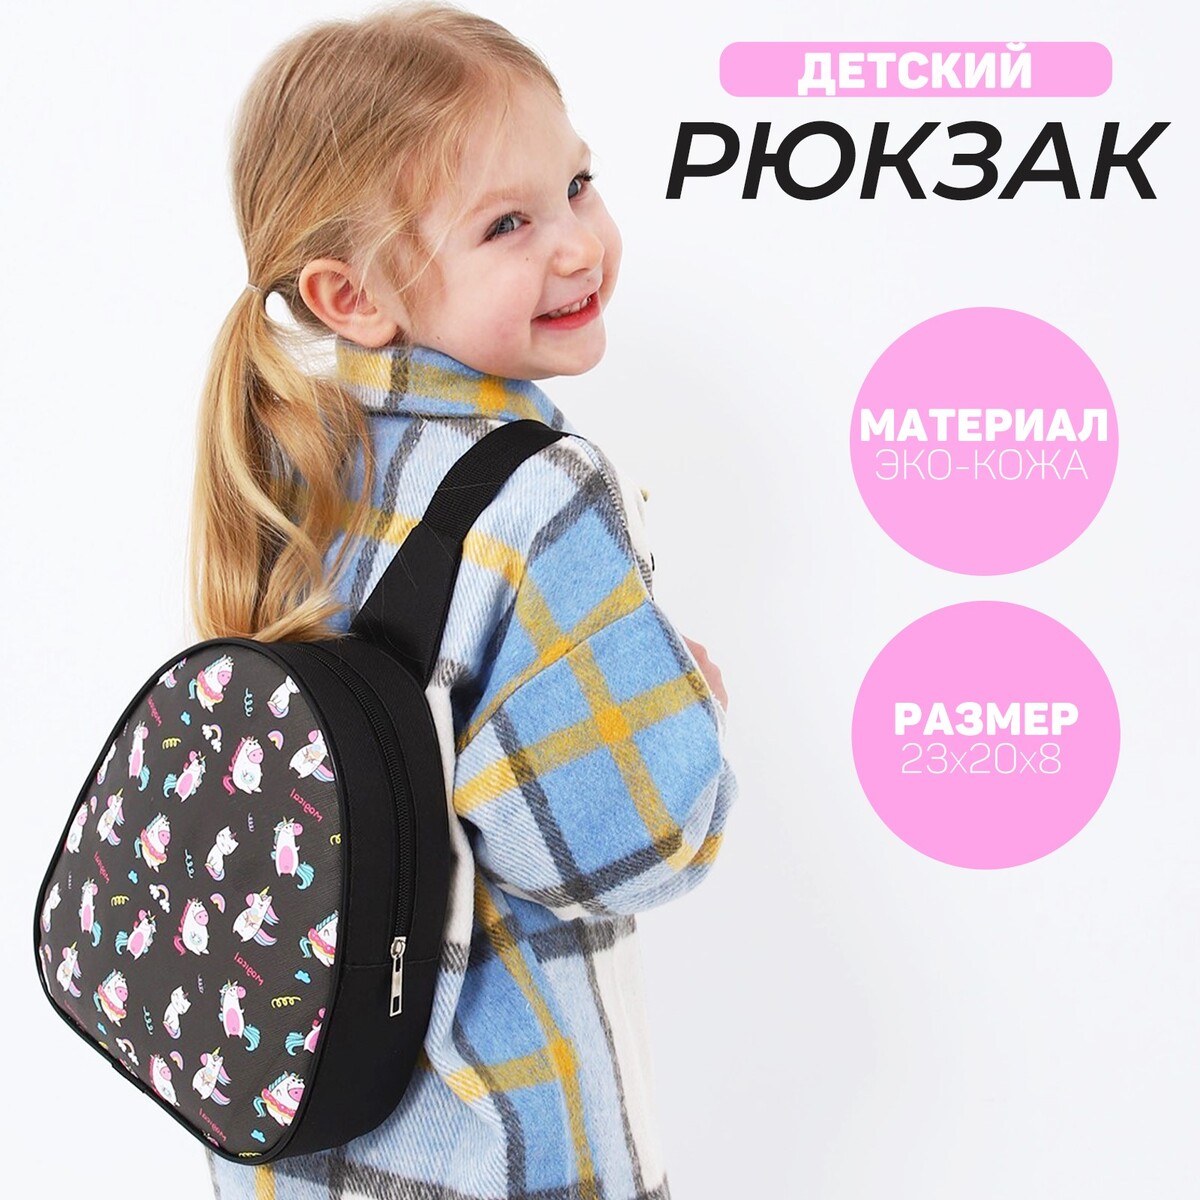 Рюкзак детский для девочки через плечо